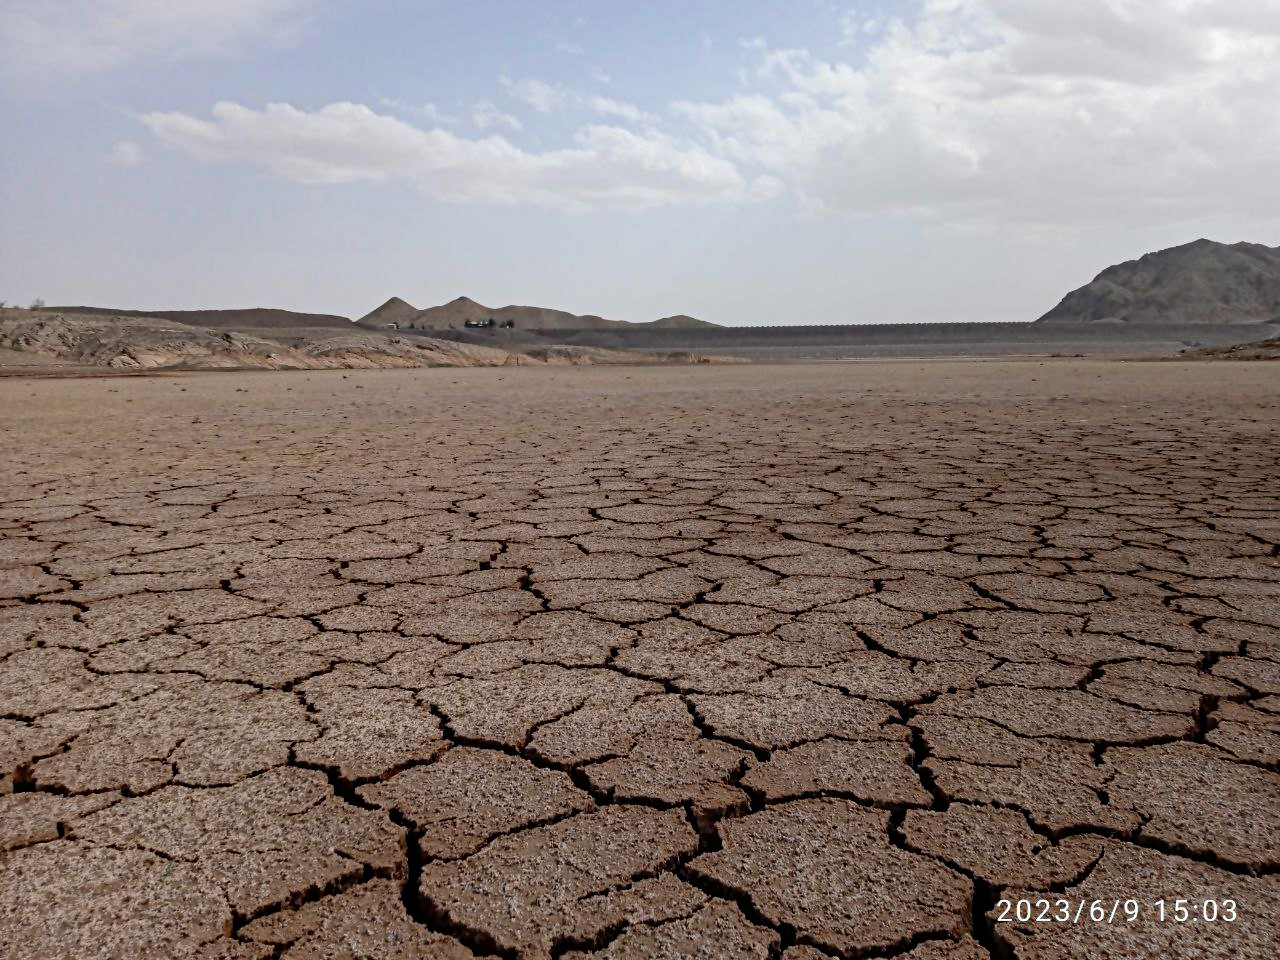 photo_۲۰۲۳-۰۶-۱۰_۰۳-۱۷-۰۵.jpg تصویری  تلخ از خشک شدن سدشهید یعقوبی 
درضلع شمال غربی سنگان بعلت خشکسالی سال 1402
جمعه 1402/3/19 by mohsen dehbashi